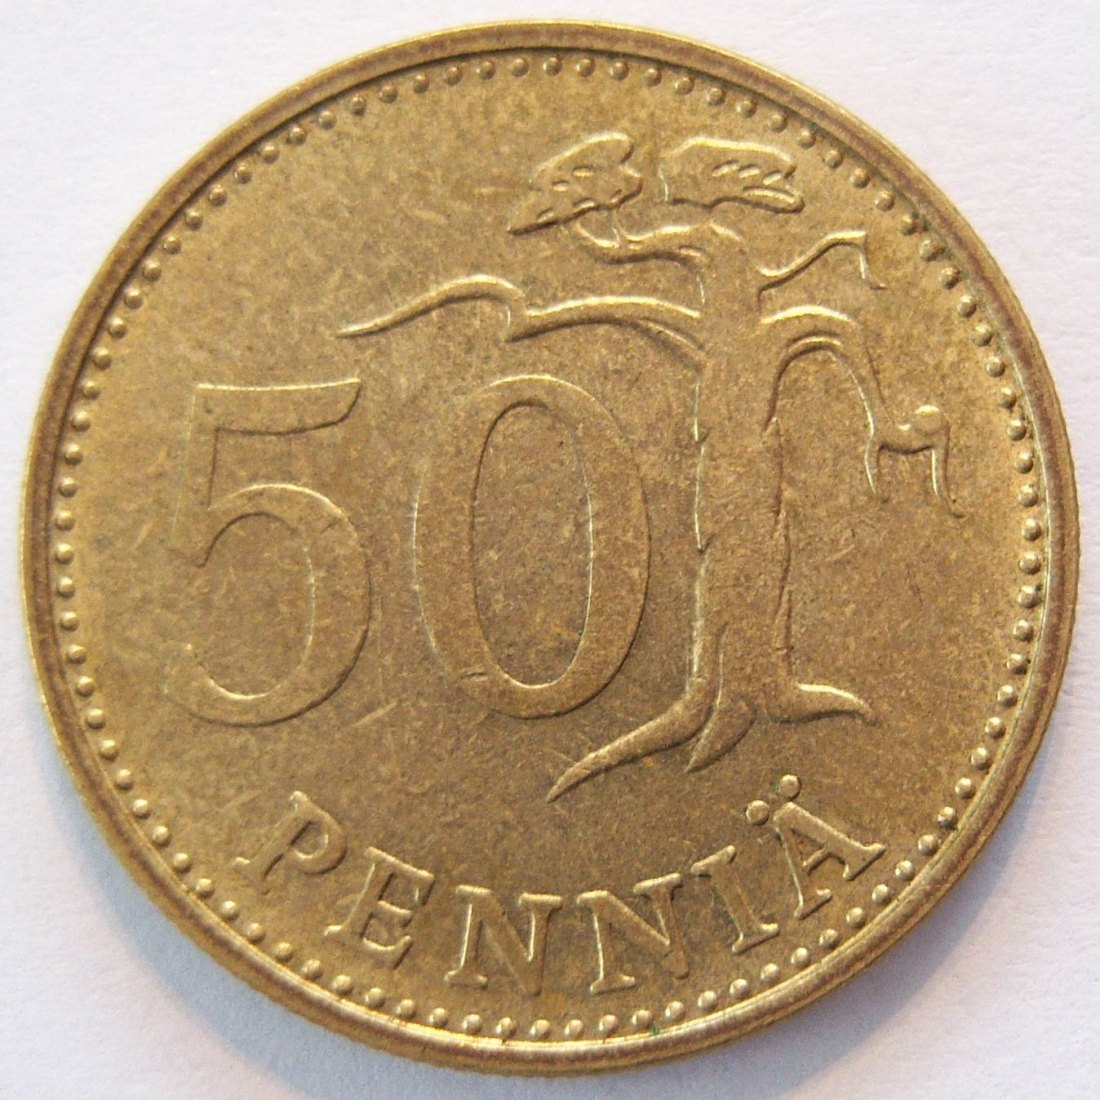  Finnland 50 Penniä 1969   